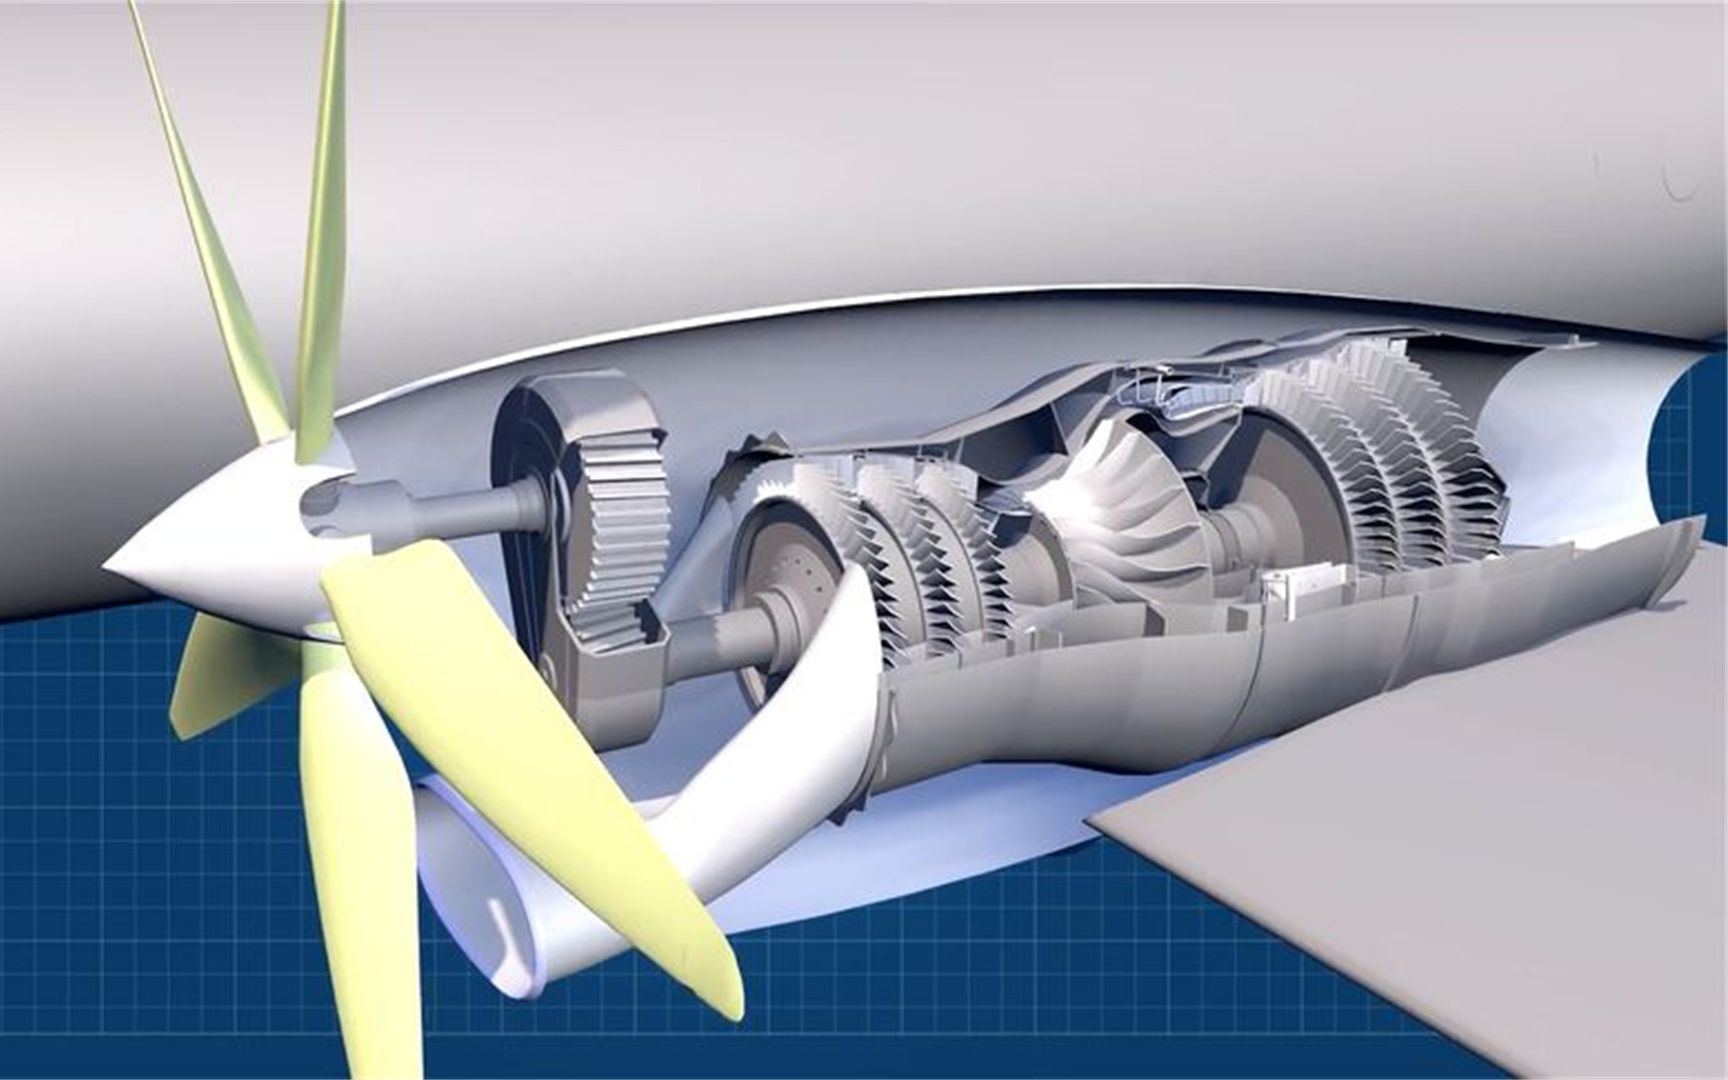 涡桨,涡扇,涡轴发动机有什么区别?